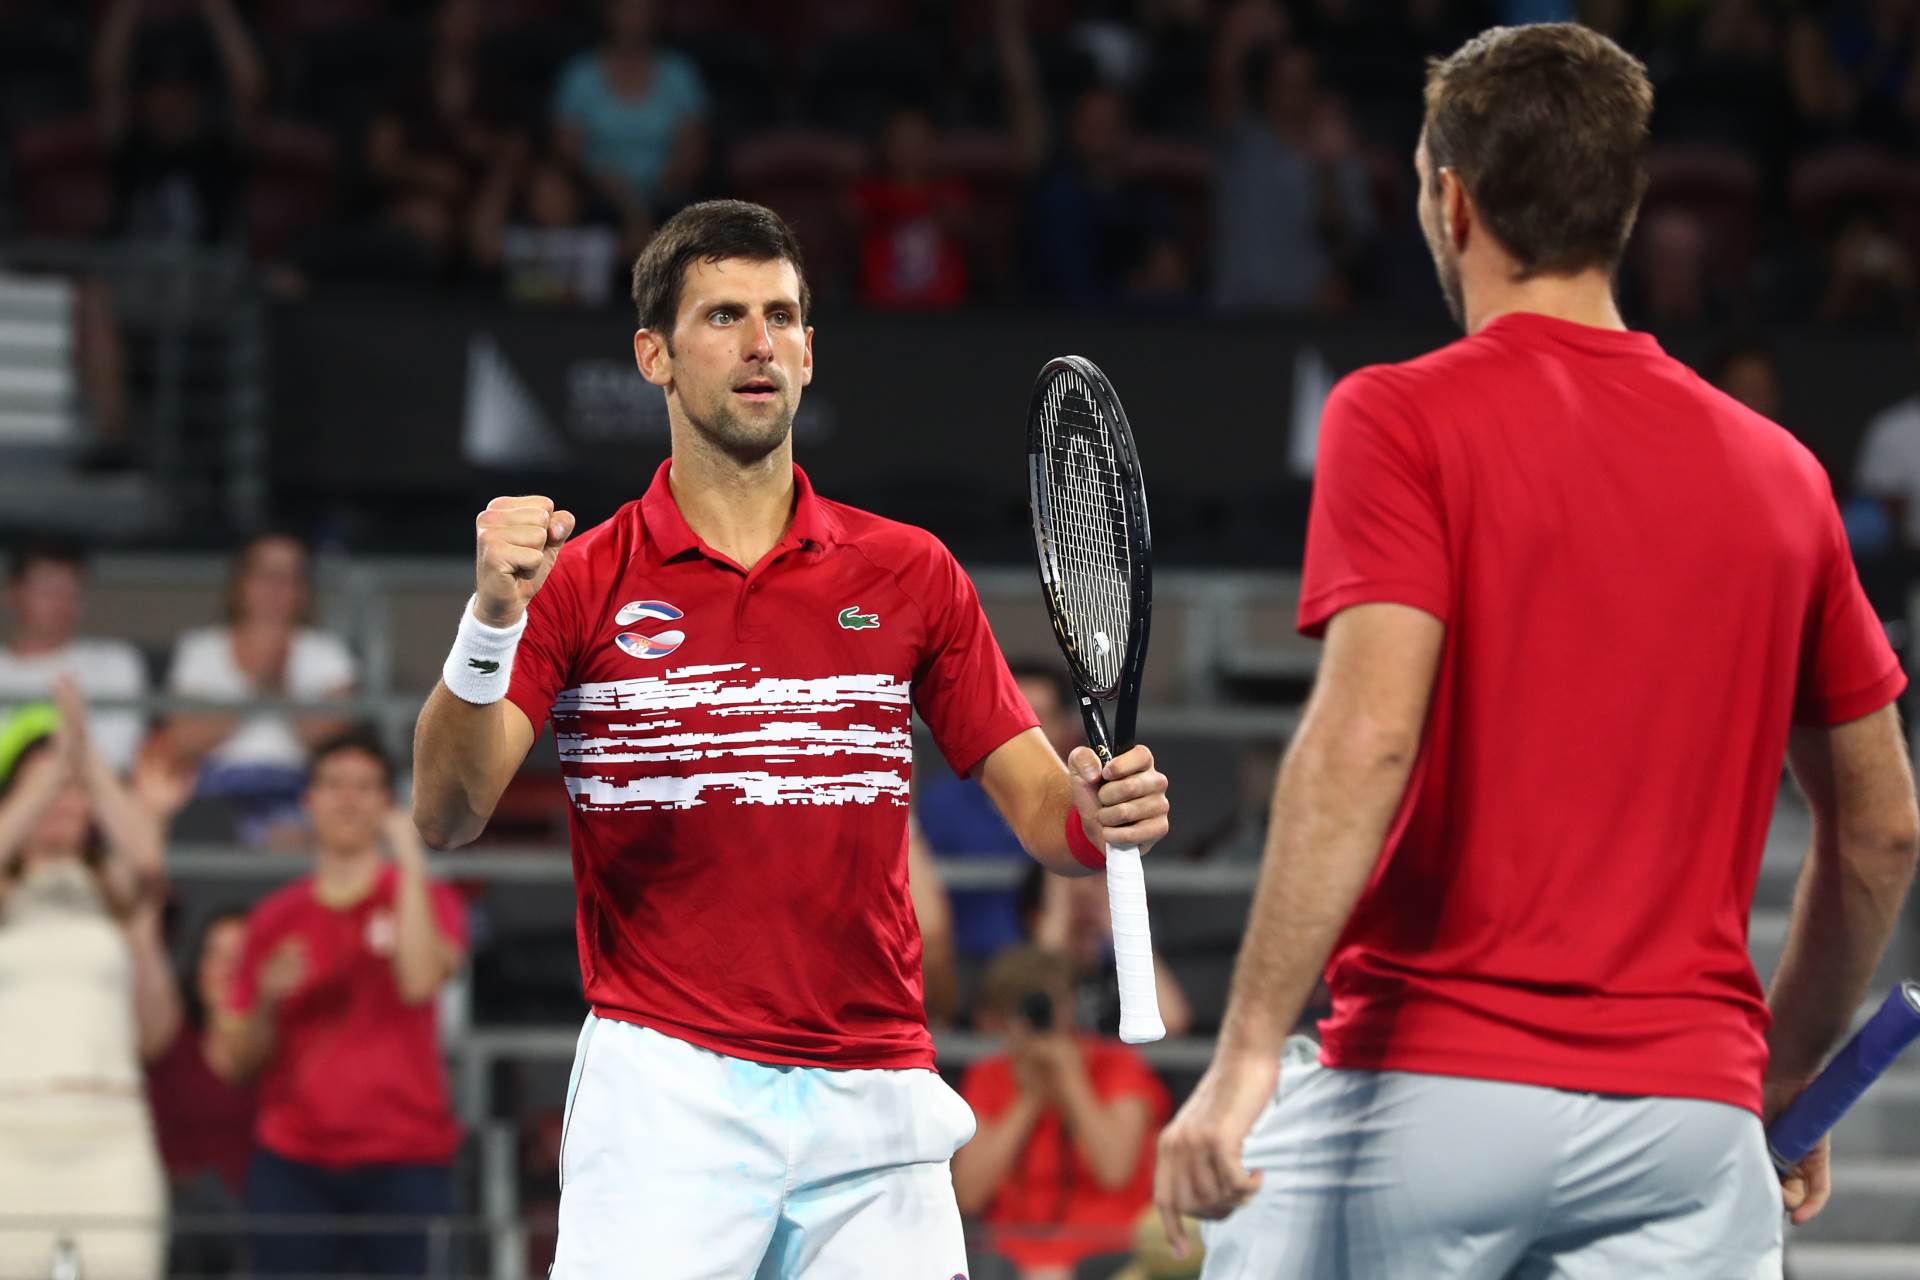  Novak-Djokovic-dubl-Filip-Krajinovic-US-open-Njujork-SAD-gren-slem-Instagram 